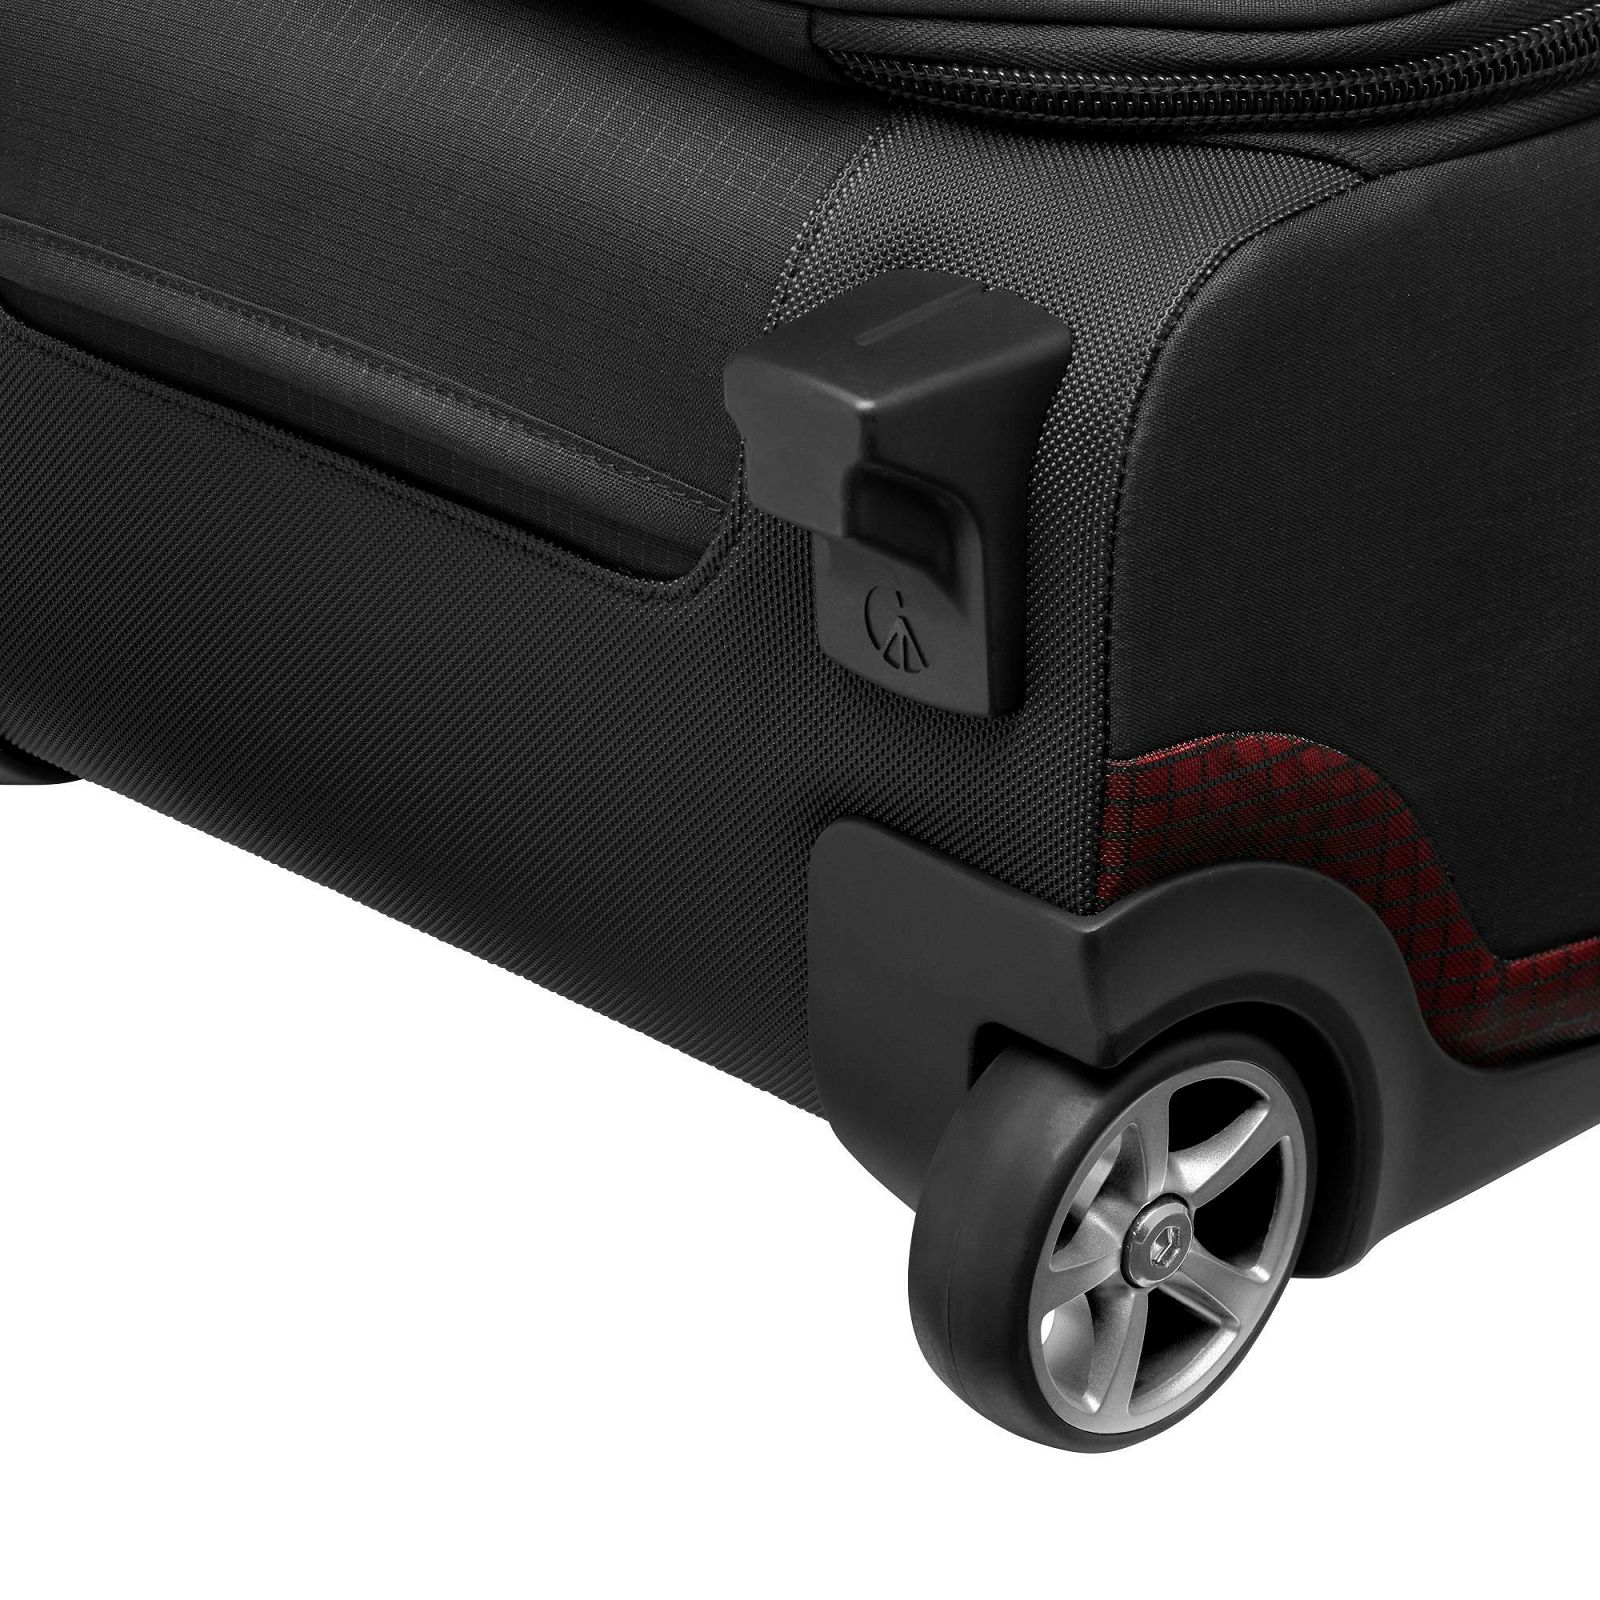 Manfrotto Pro Light Reloader Air-50 PL Carry-On Camera Roller Bag Black kufer za foto opremu (MB PL-RL-A50)